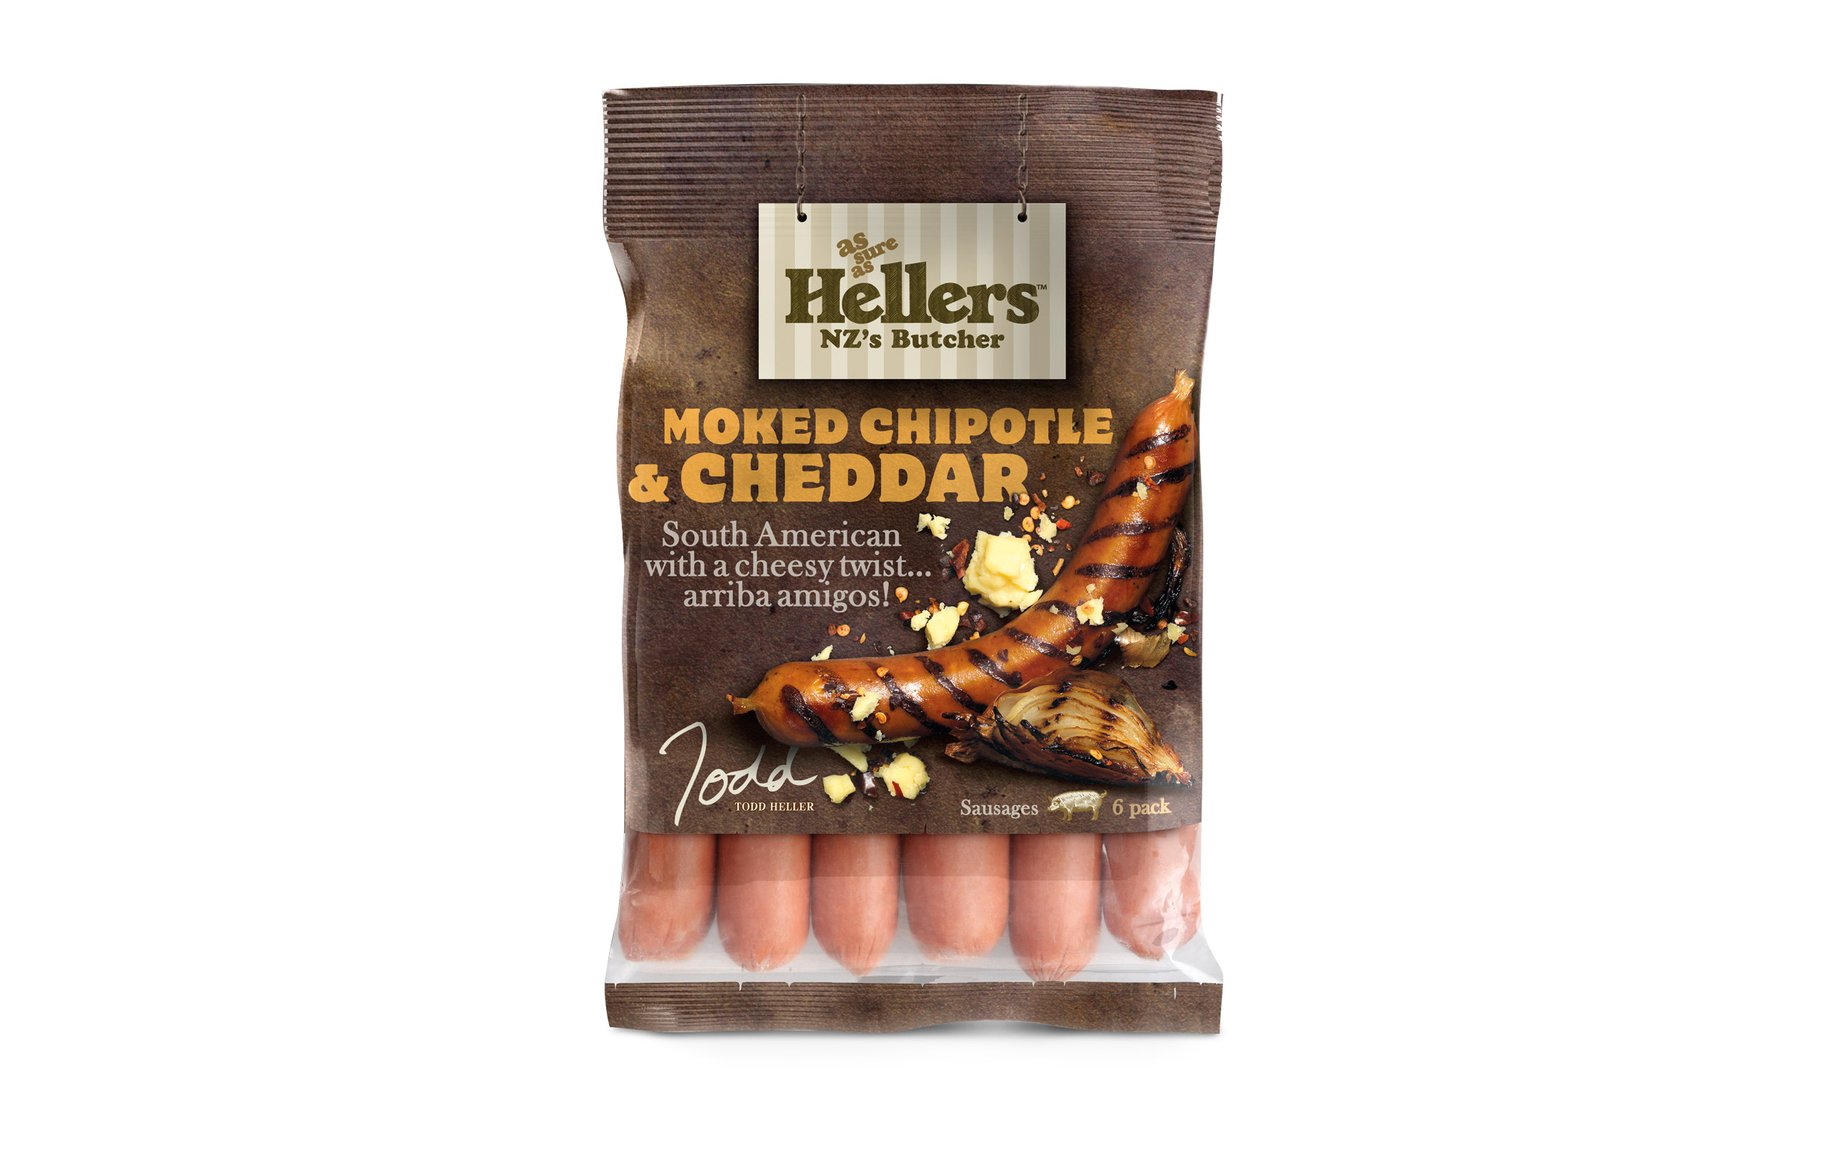 Hellers sausages packaging 